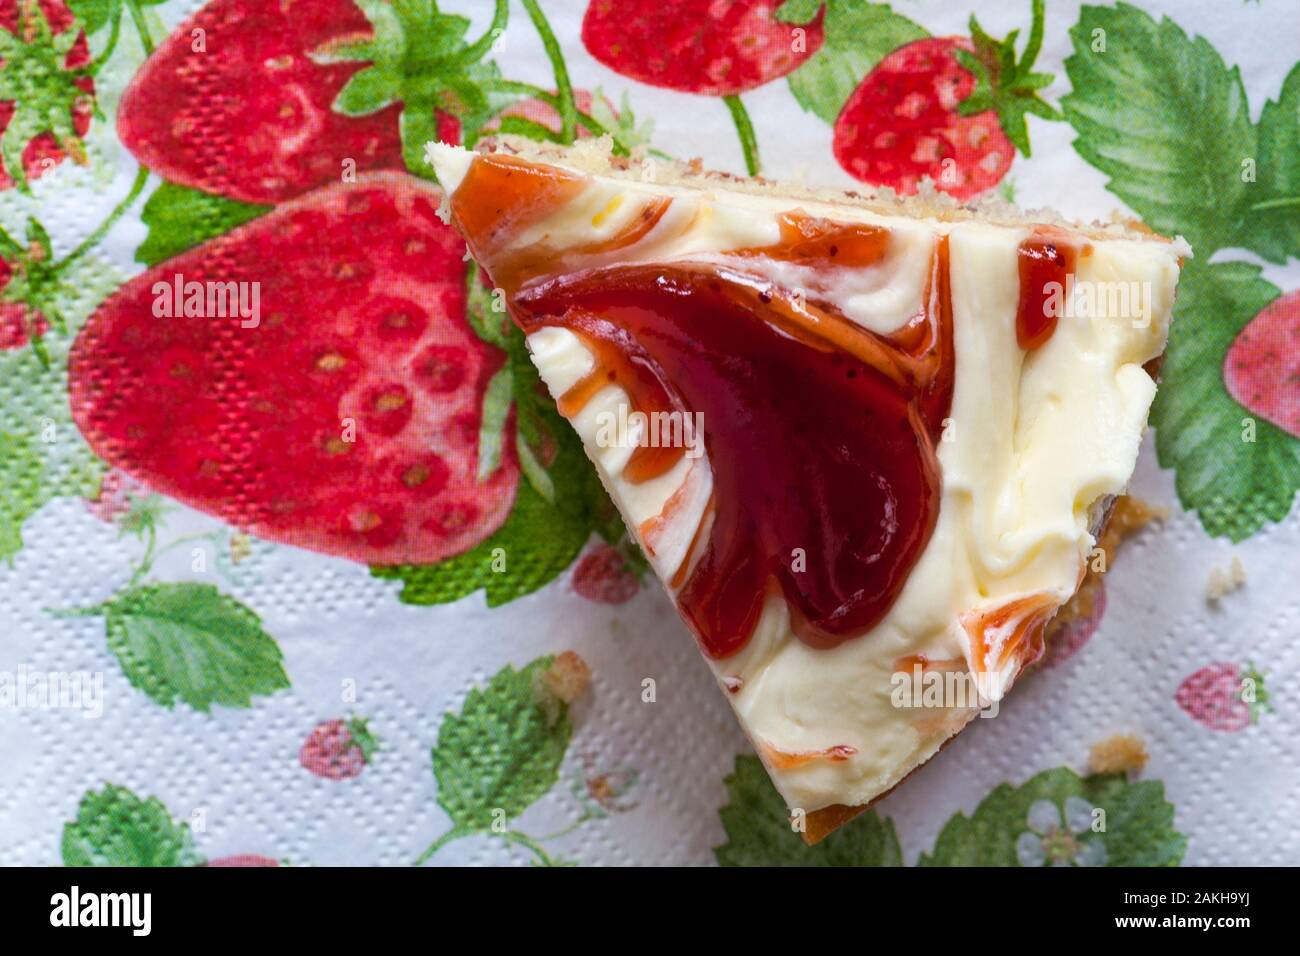 Stück M&S Strawberry & Cornish Clotted Cream Kuchen auf serviette Serviette Stockfoto